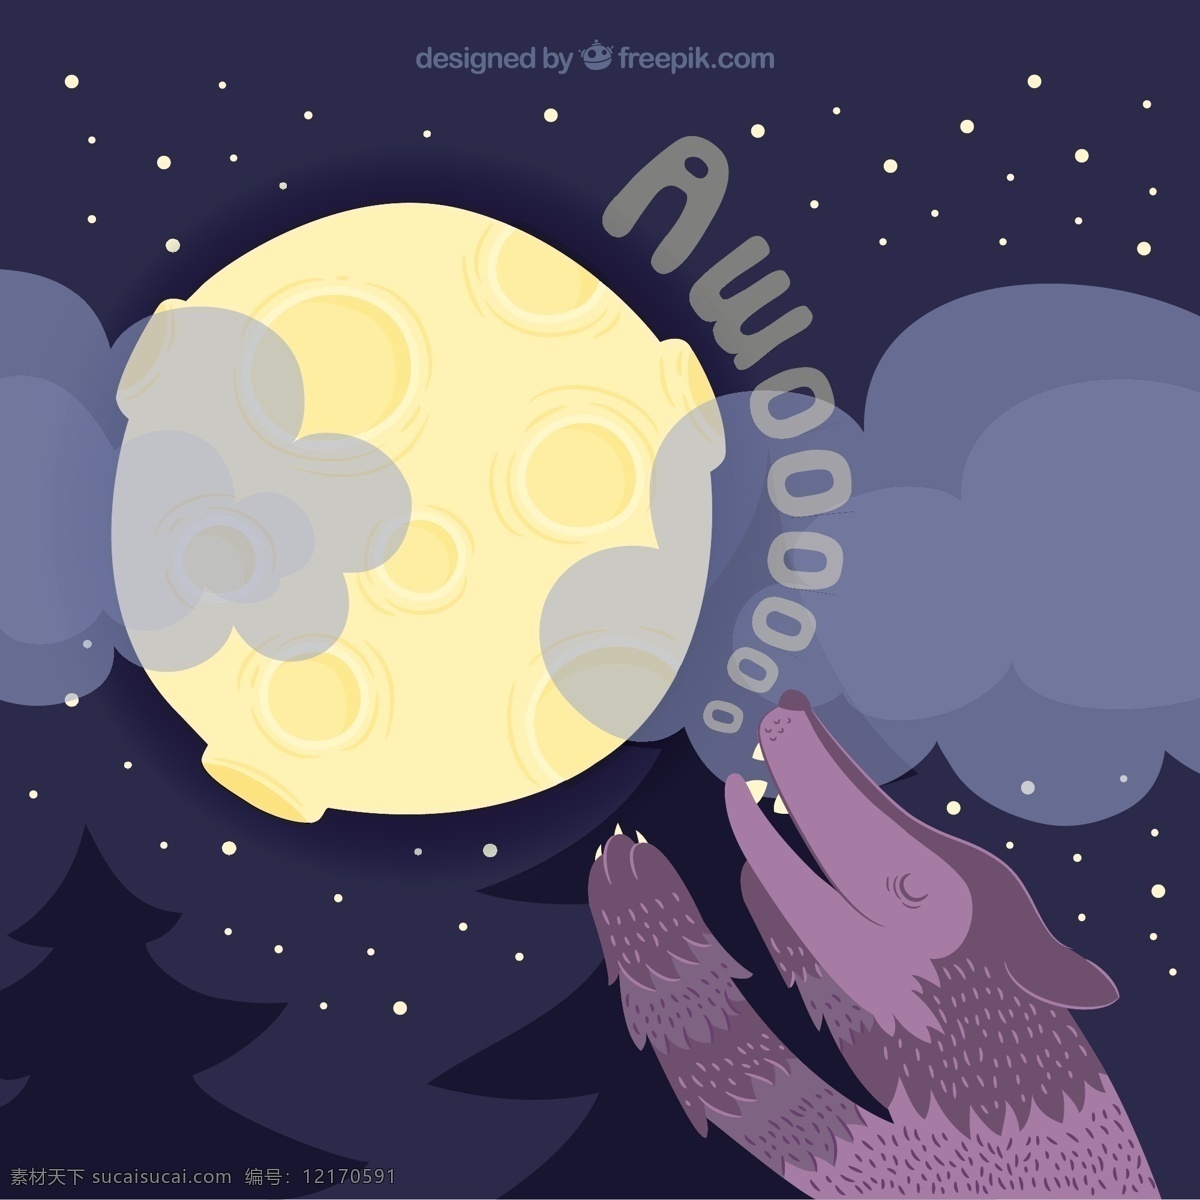 月光 狼嚎 大 背景 灯光 色彩 月亮 云彩 平 多彩的背景 夜晚 狼 平面设计 卫星 背景色 满月 天文 伟大 月球 充分 嚎叫